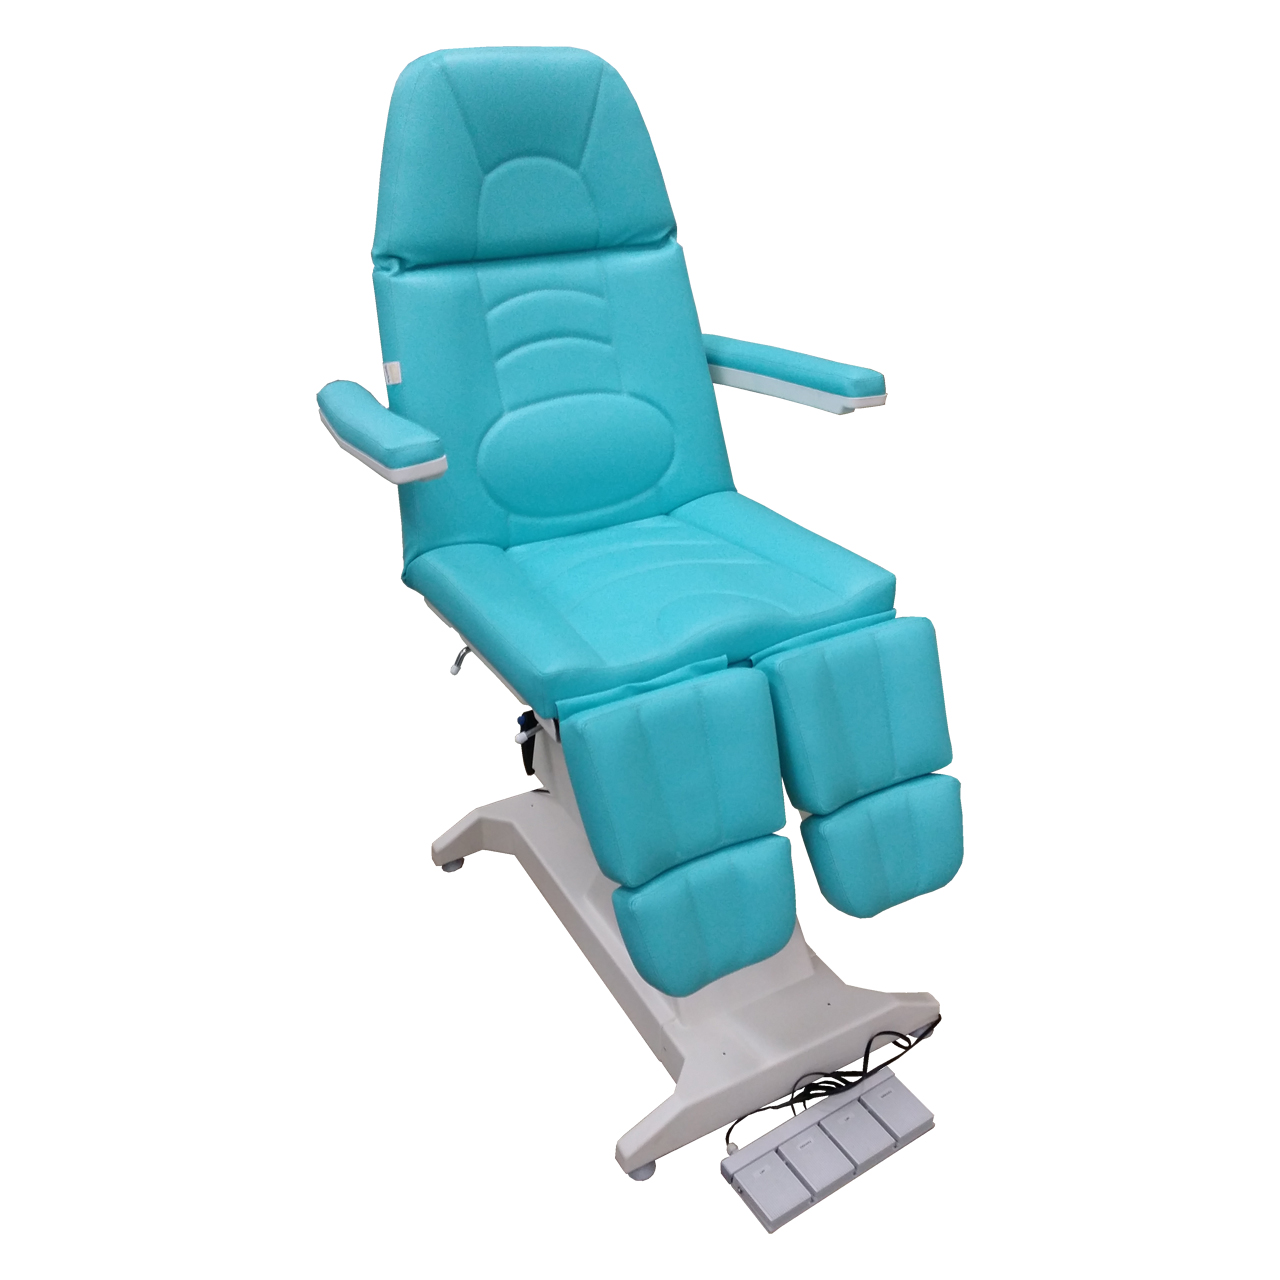 Кресло процедурное с электроприводом ФП-2, с газлифтами на подножках, с ножной педалью управления.